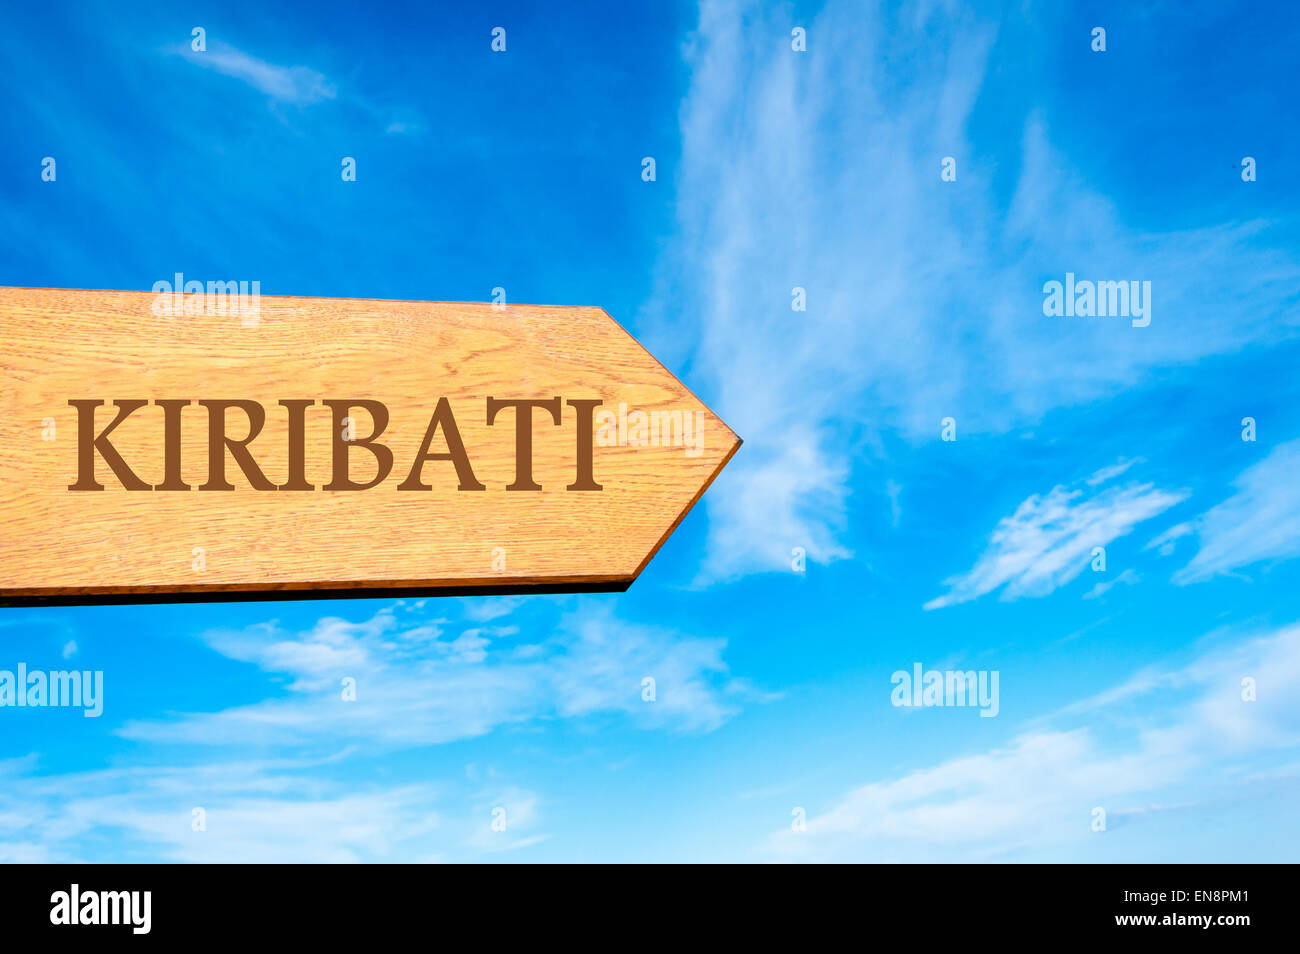 Flèche en bois panneau indiquant la destination KIRIBATI contre ciel bleu clair avec copie espace disponible. Destination Voyage conceptual image Banque D'Images